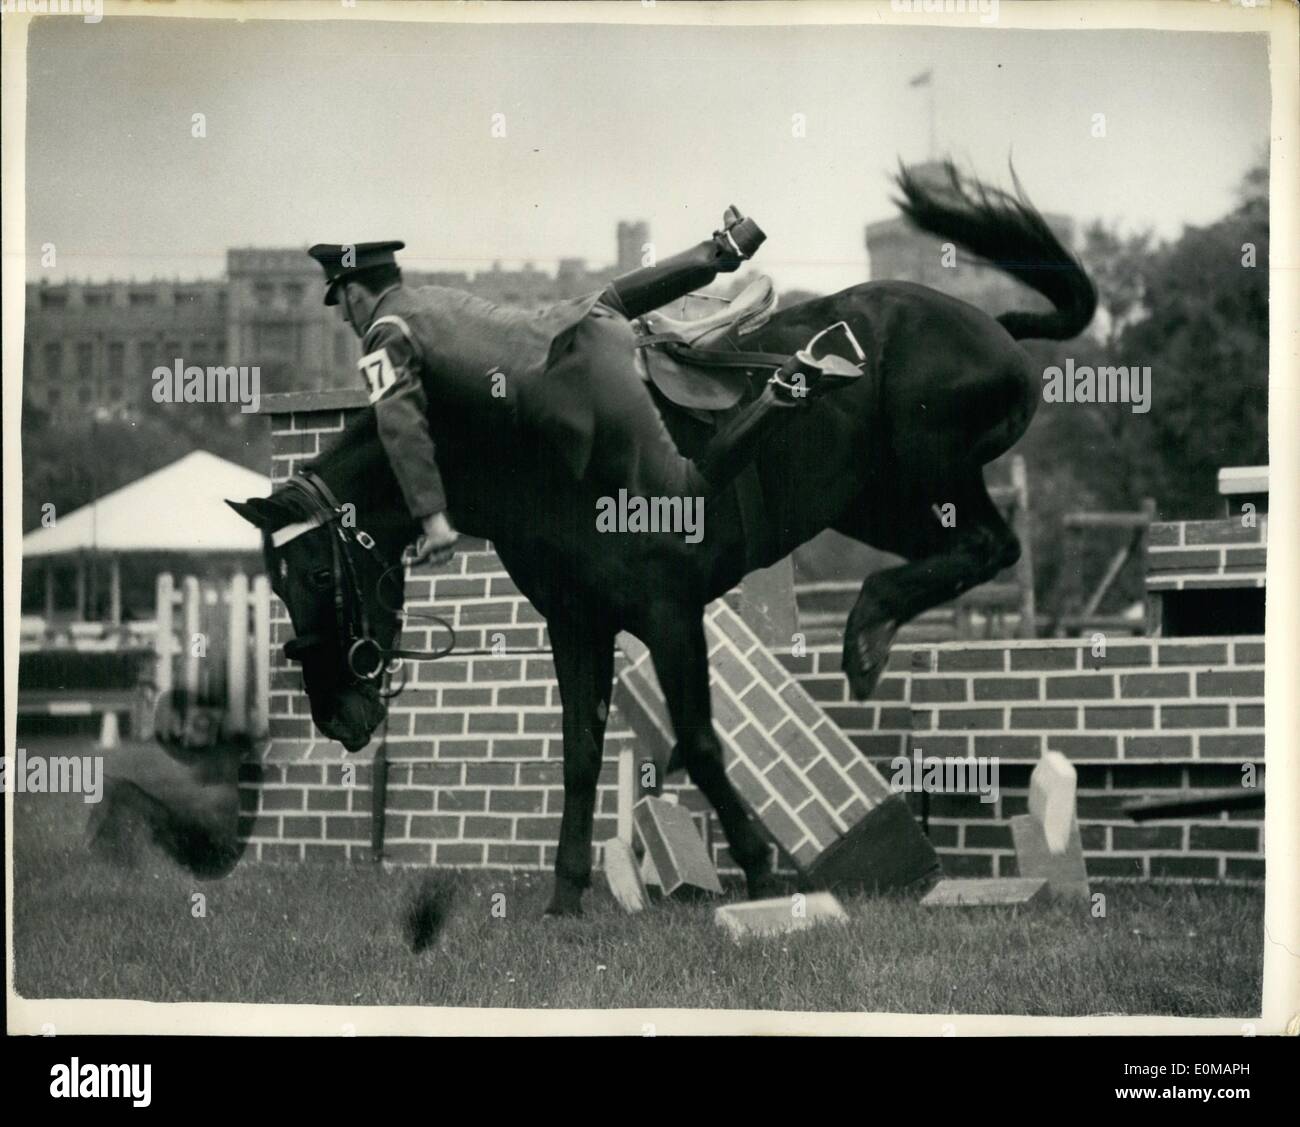 Mai 05, 1954 - Royal Windsor Horse Show. Le cheval qui est tombé à l'aller. Montre Photo : Cpl. Truslove de la Household Cavalry - Banque D'Images